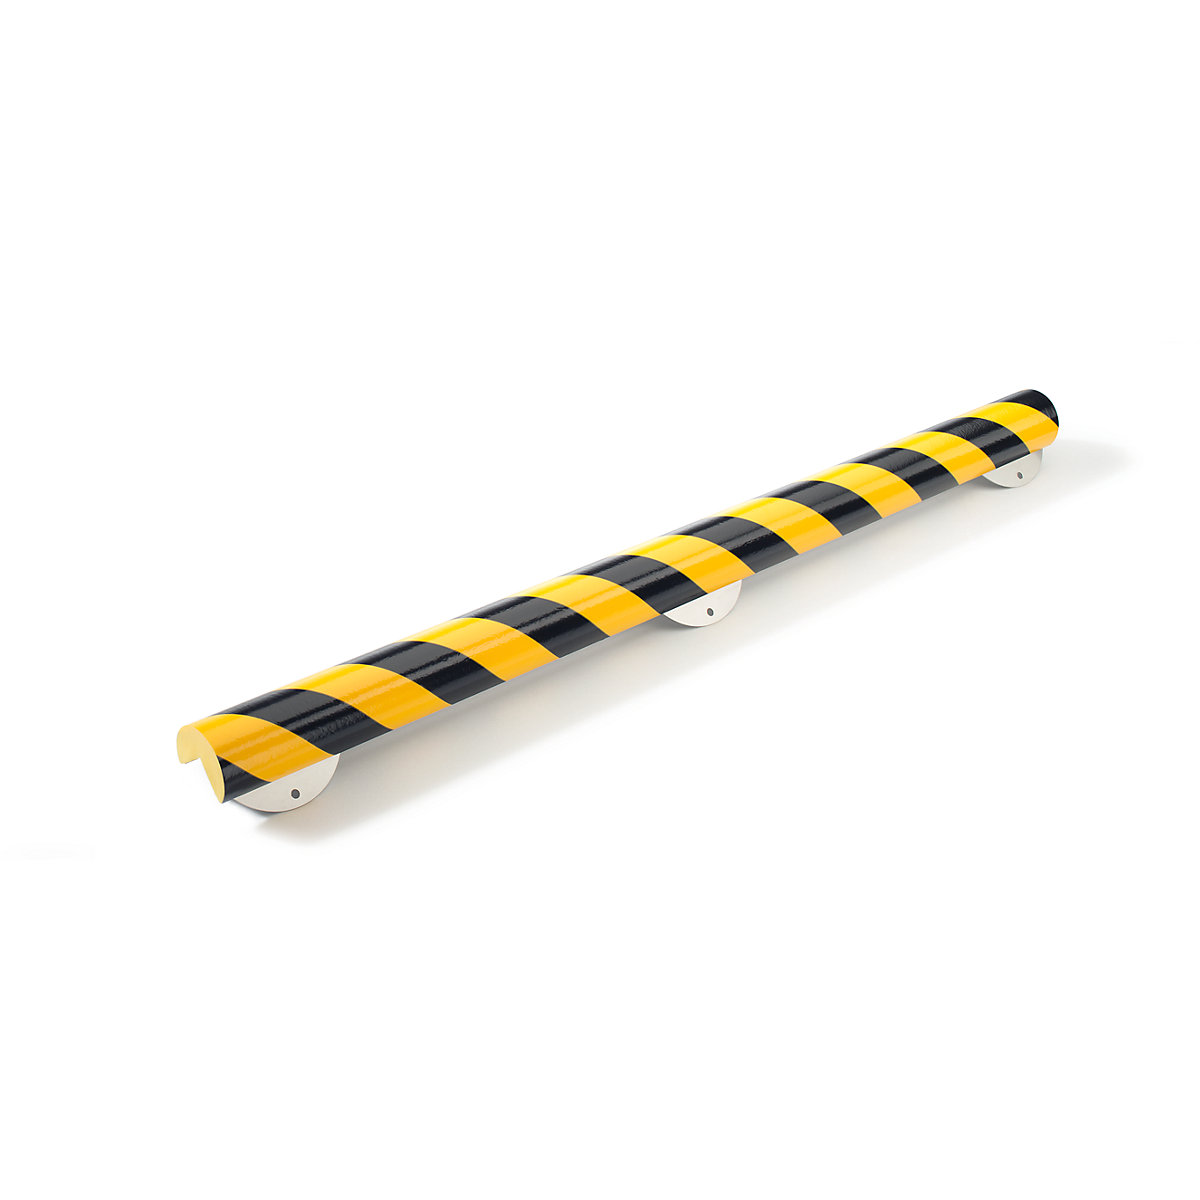 SHG – Protecție pentru colț Knuffi® cu șină de montaj, tip A+, bucată de 1 m, negru / galben